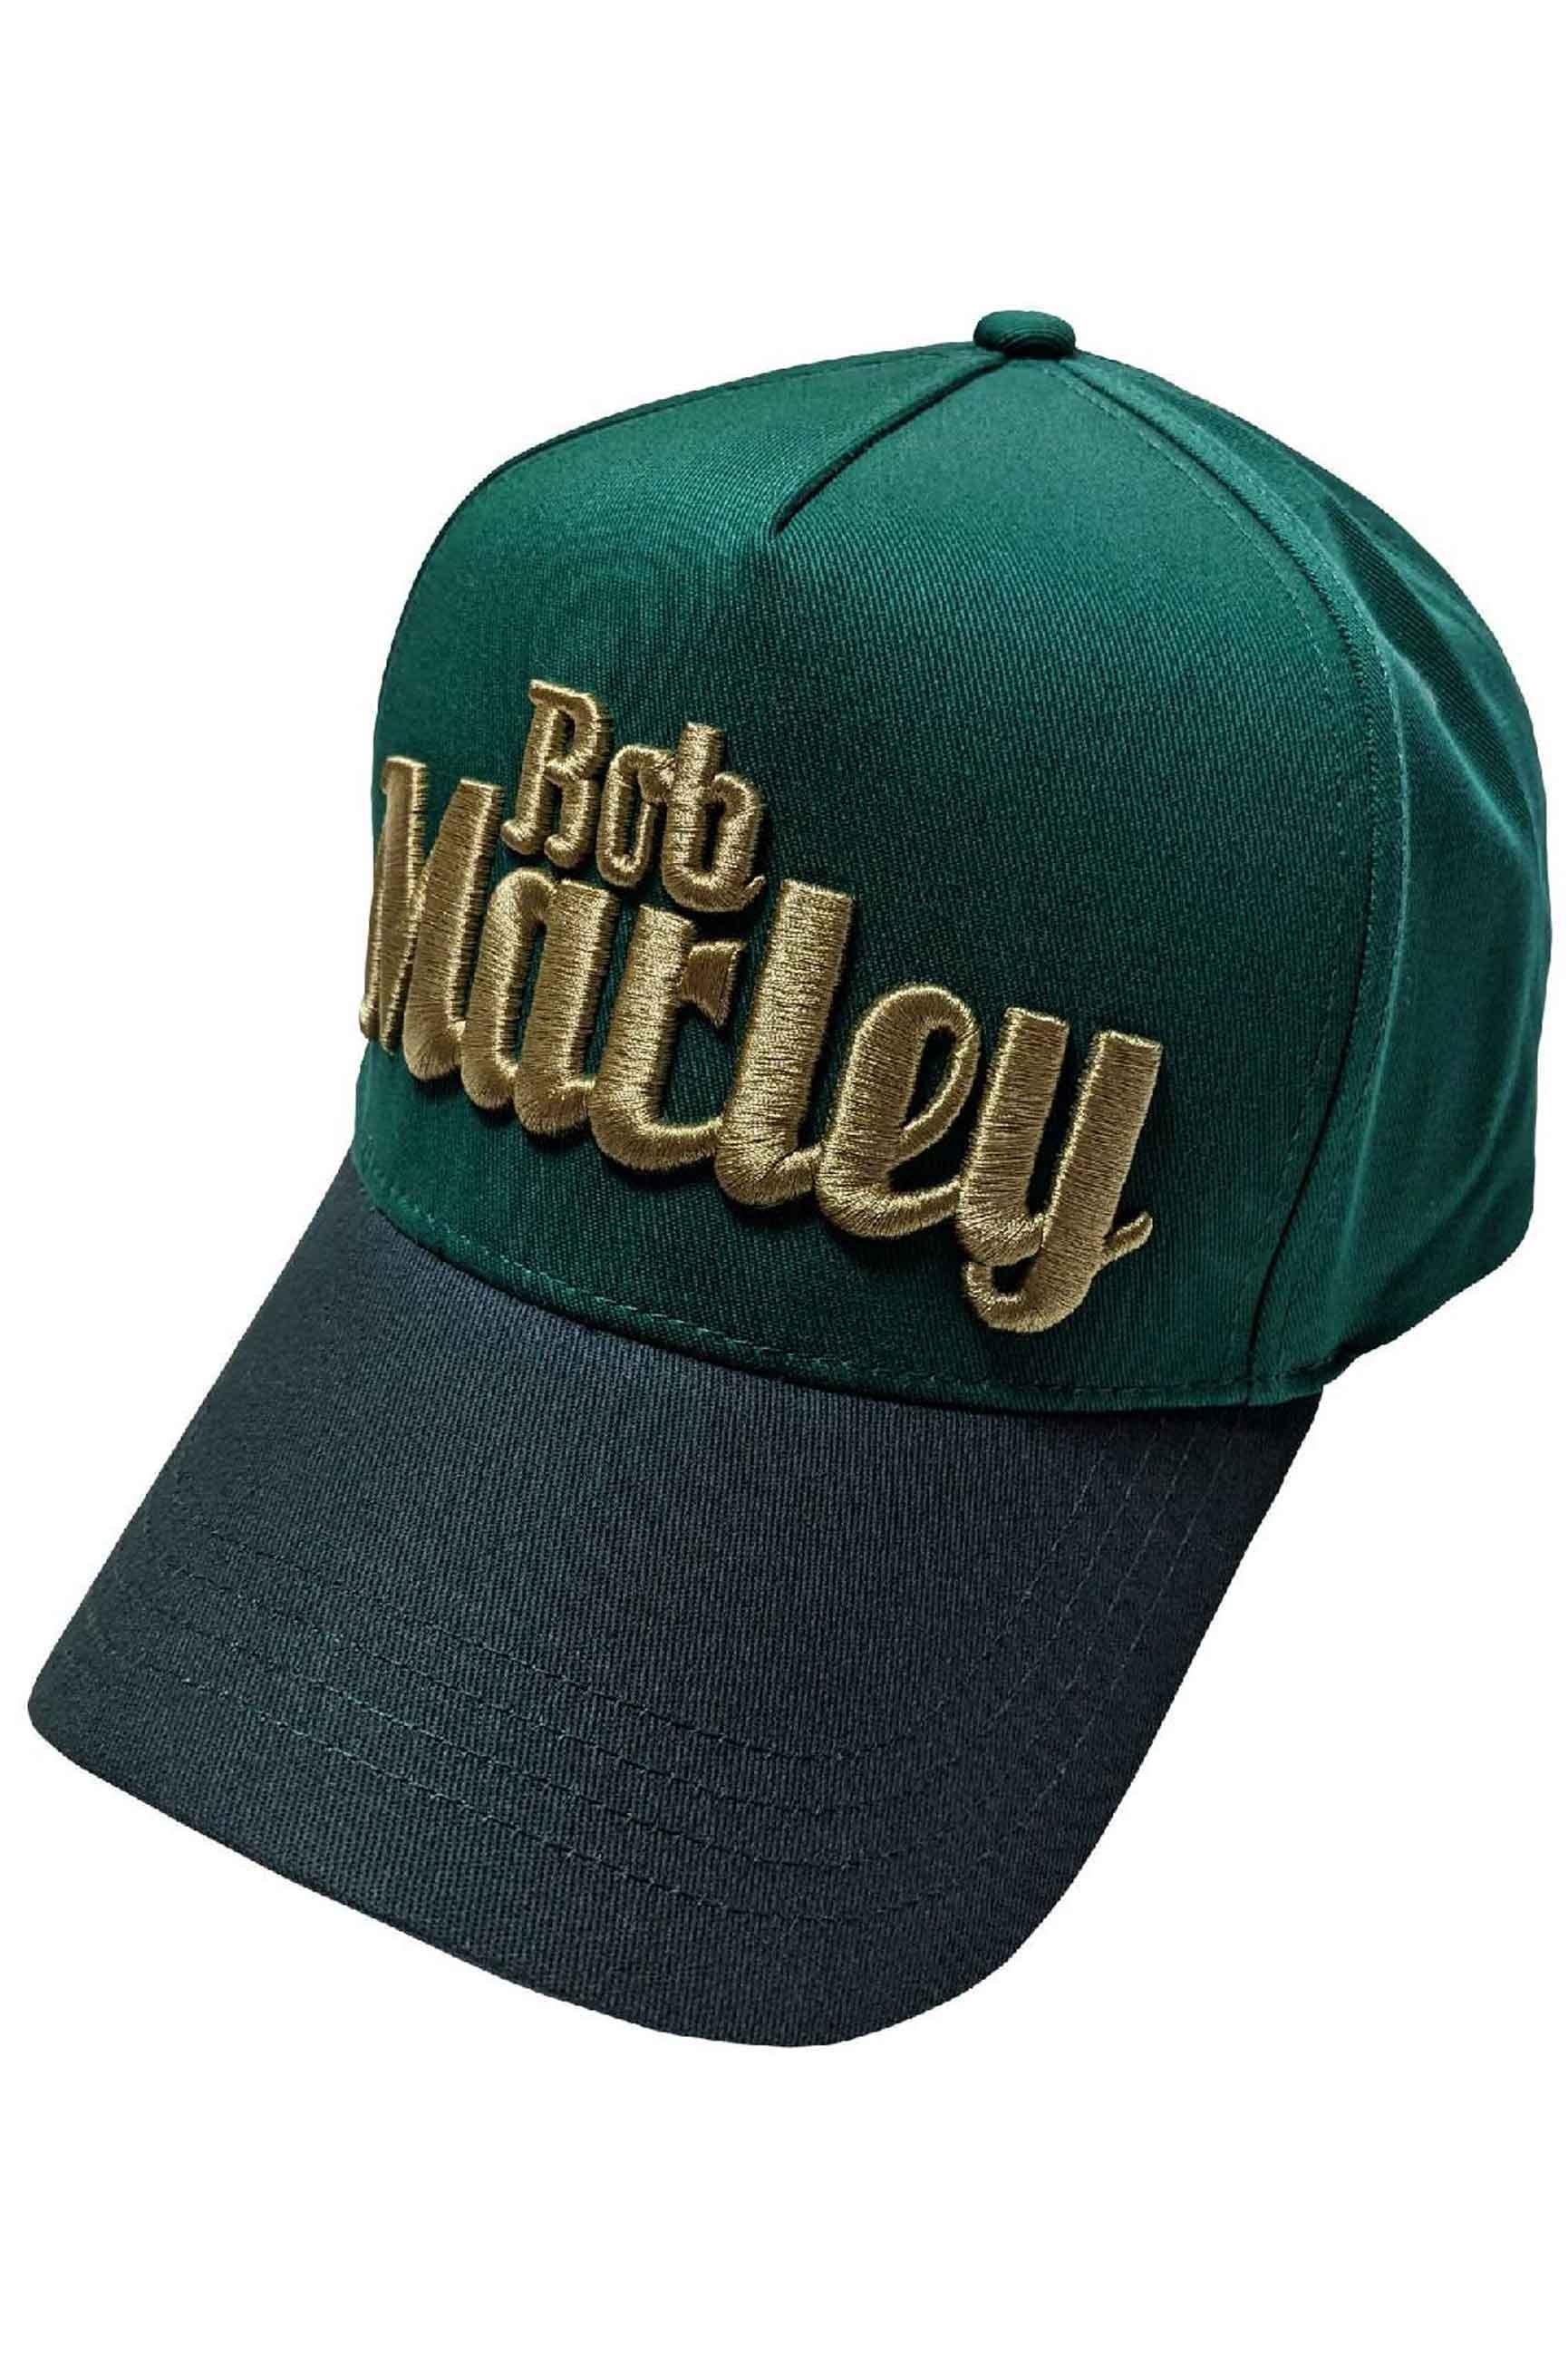 Бейсбольная кепка Trucker с текстовым логотипом Bob Marley, зеленый регулируемая бейсболка the farm сетчатая кепка тракер сетчатая кепка унисекс шапка с бретельками дышащие спортивные кепки уличная солнцеза